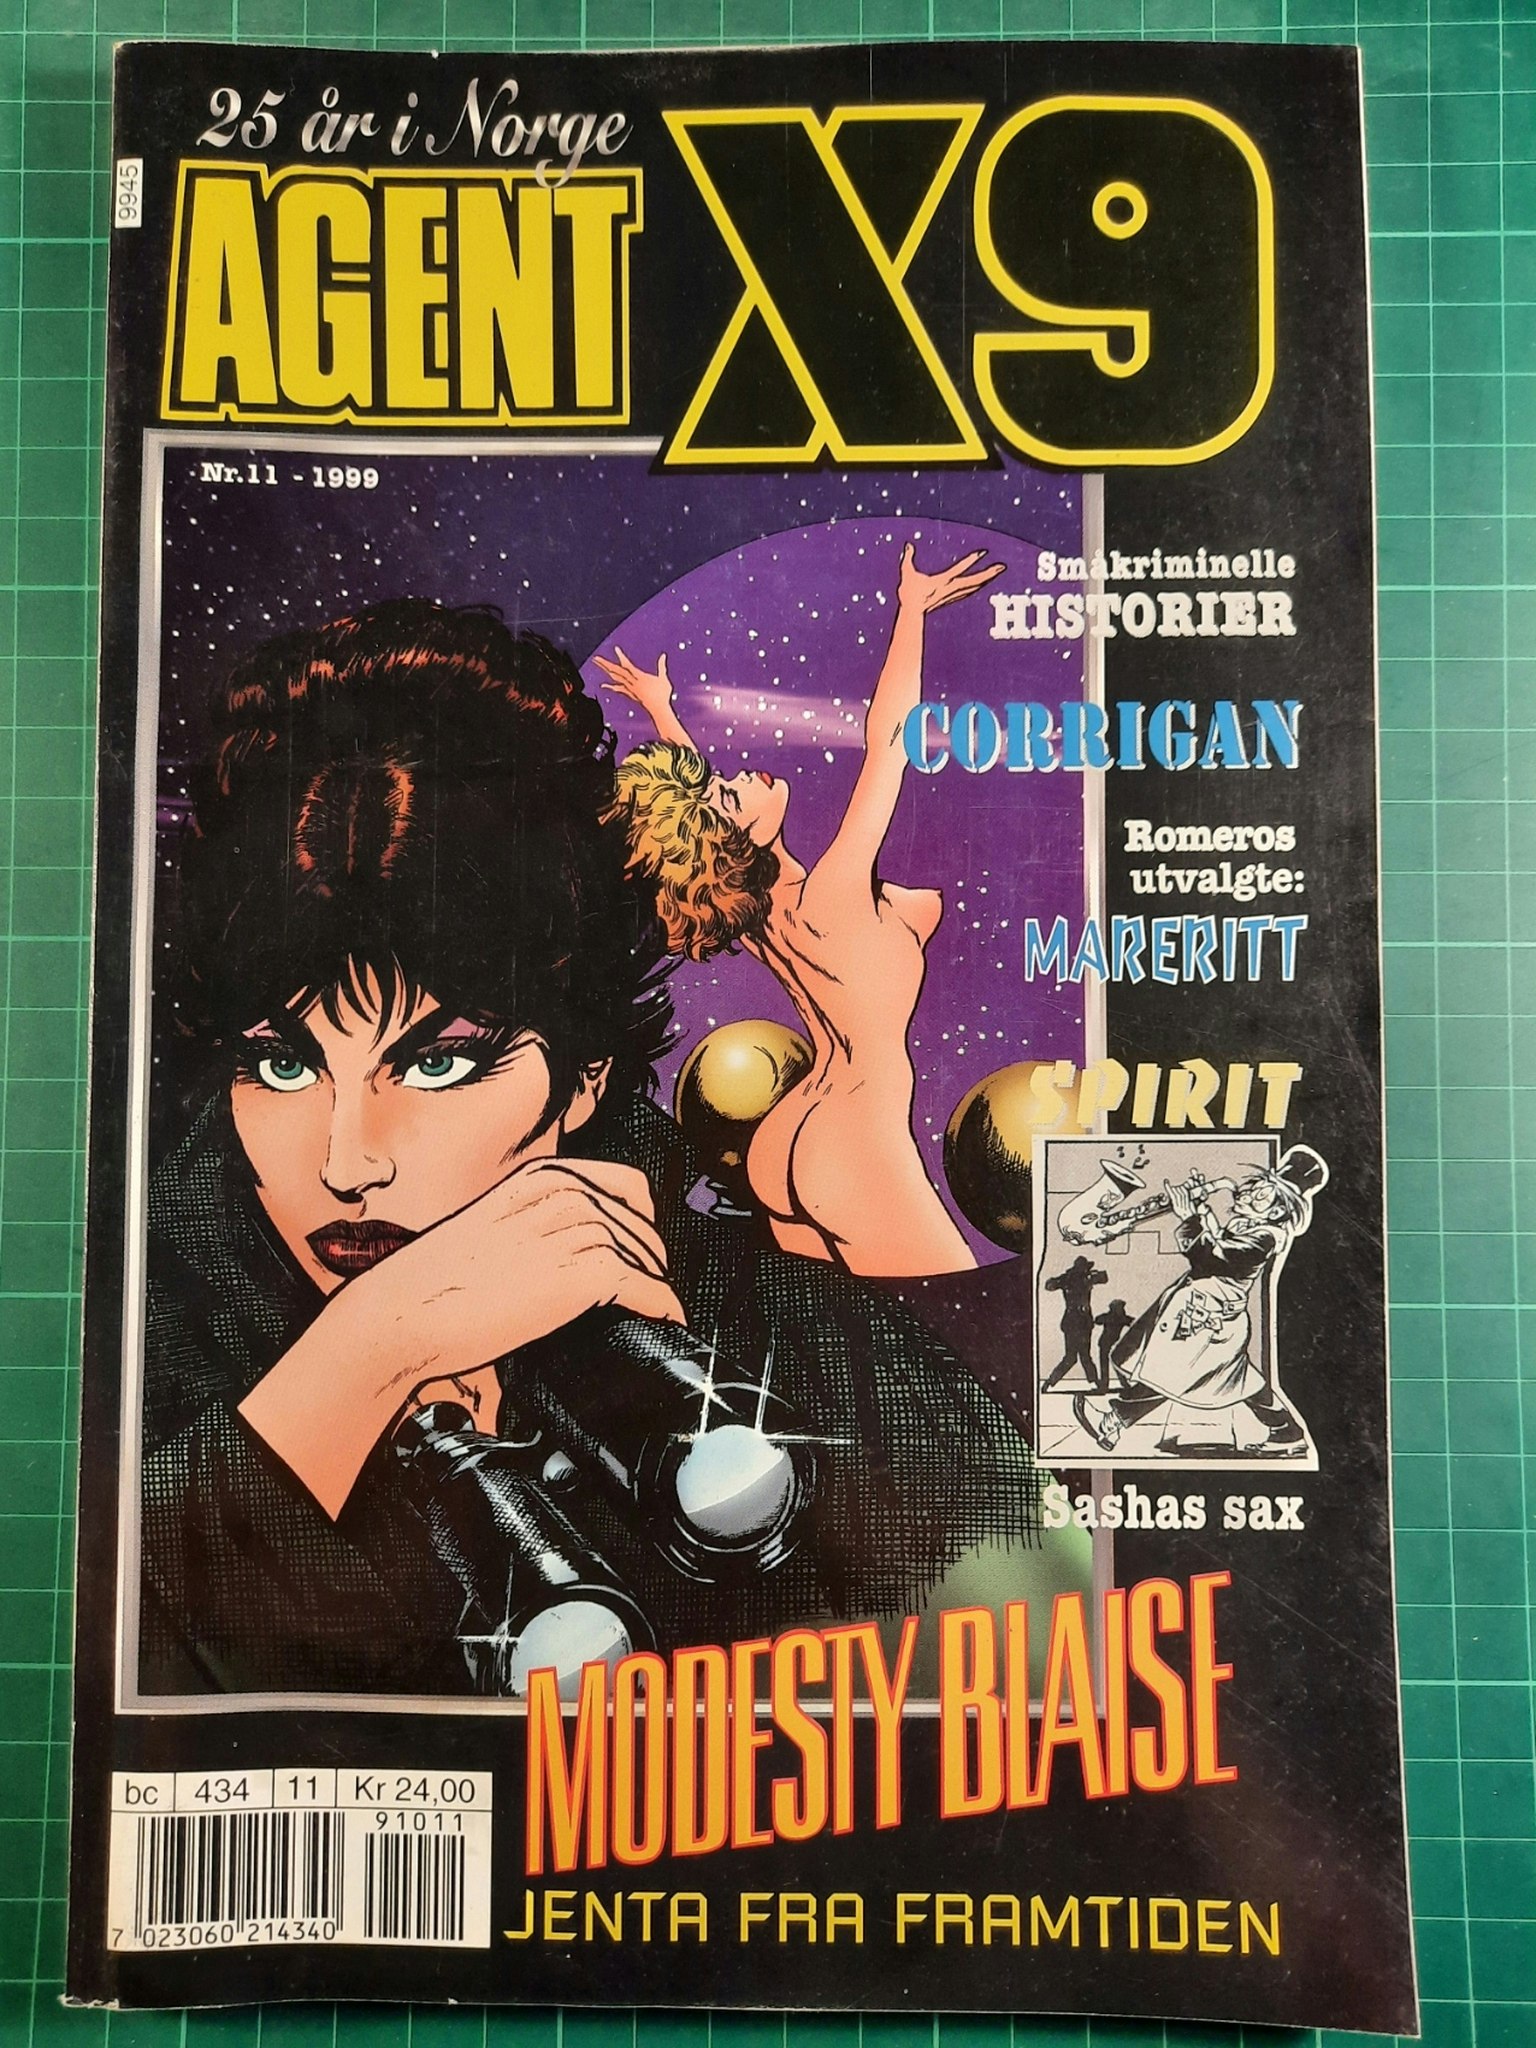 Agent X9 1999 - 11